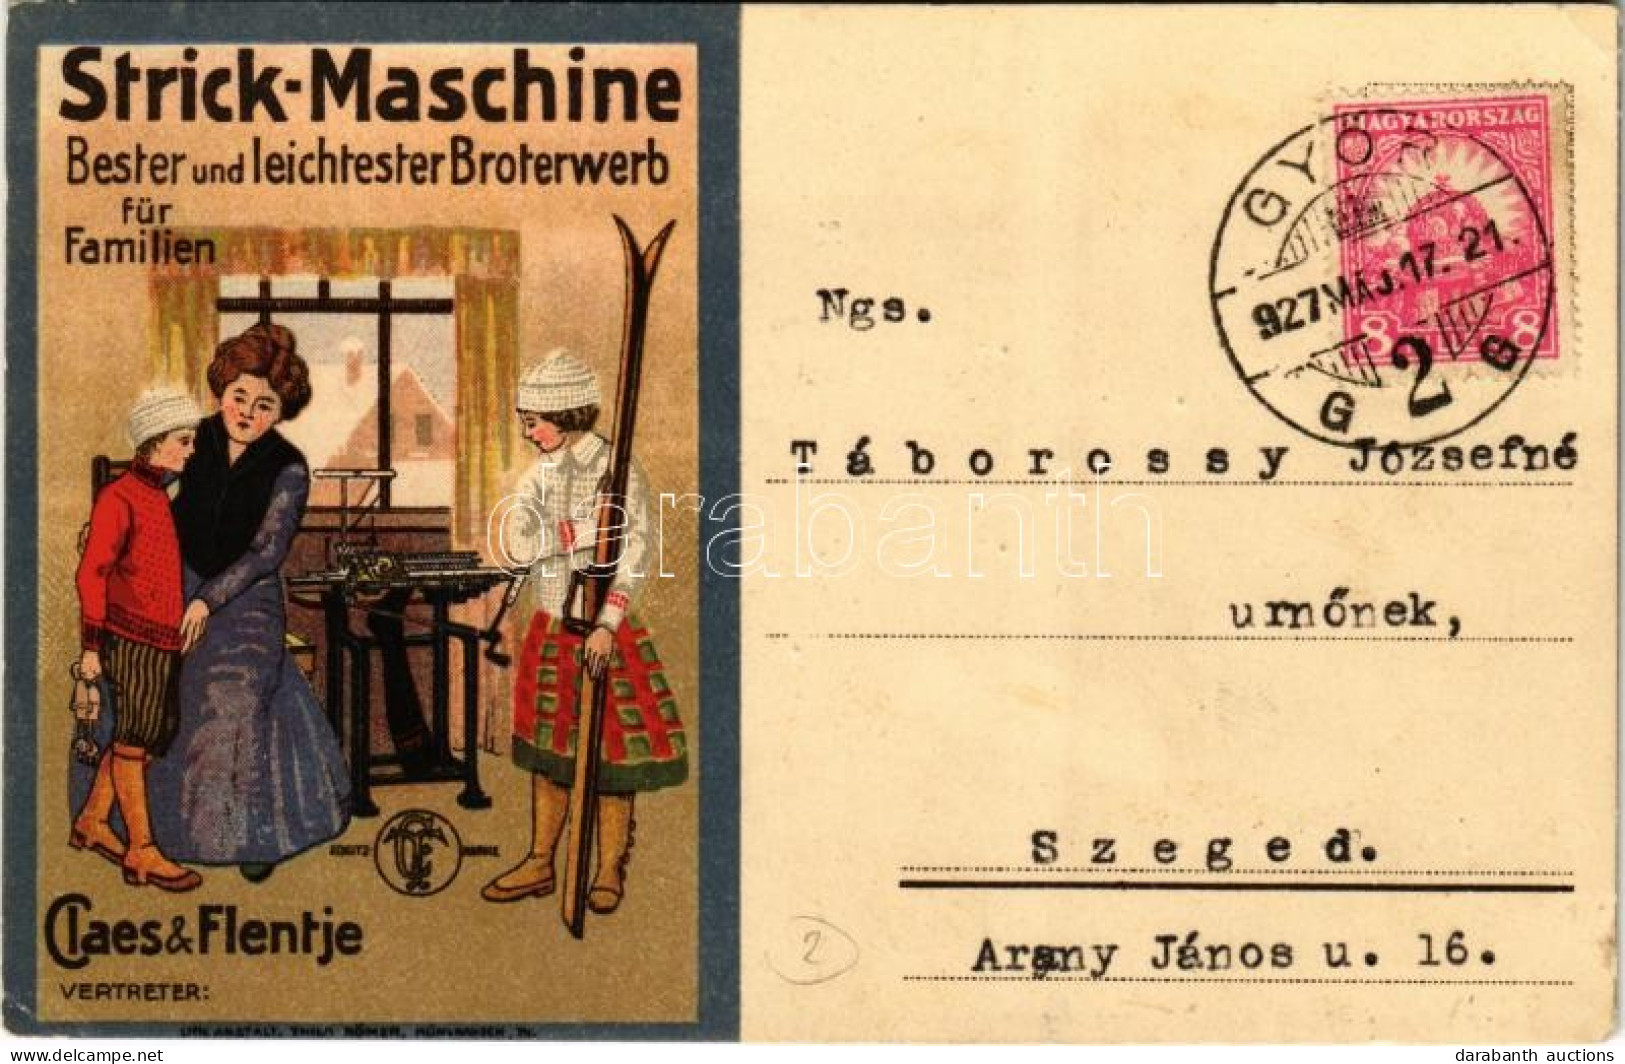 T2/T3 1927 Claes & Flentje "Strick-Maschine" Bester Und Leichtester Broterwerb Für Familien / German Knitting Machine Ad - Unclassified